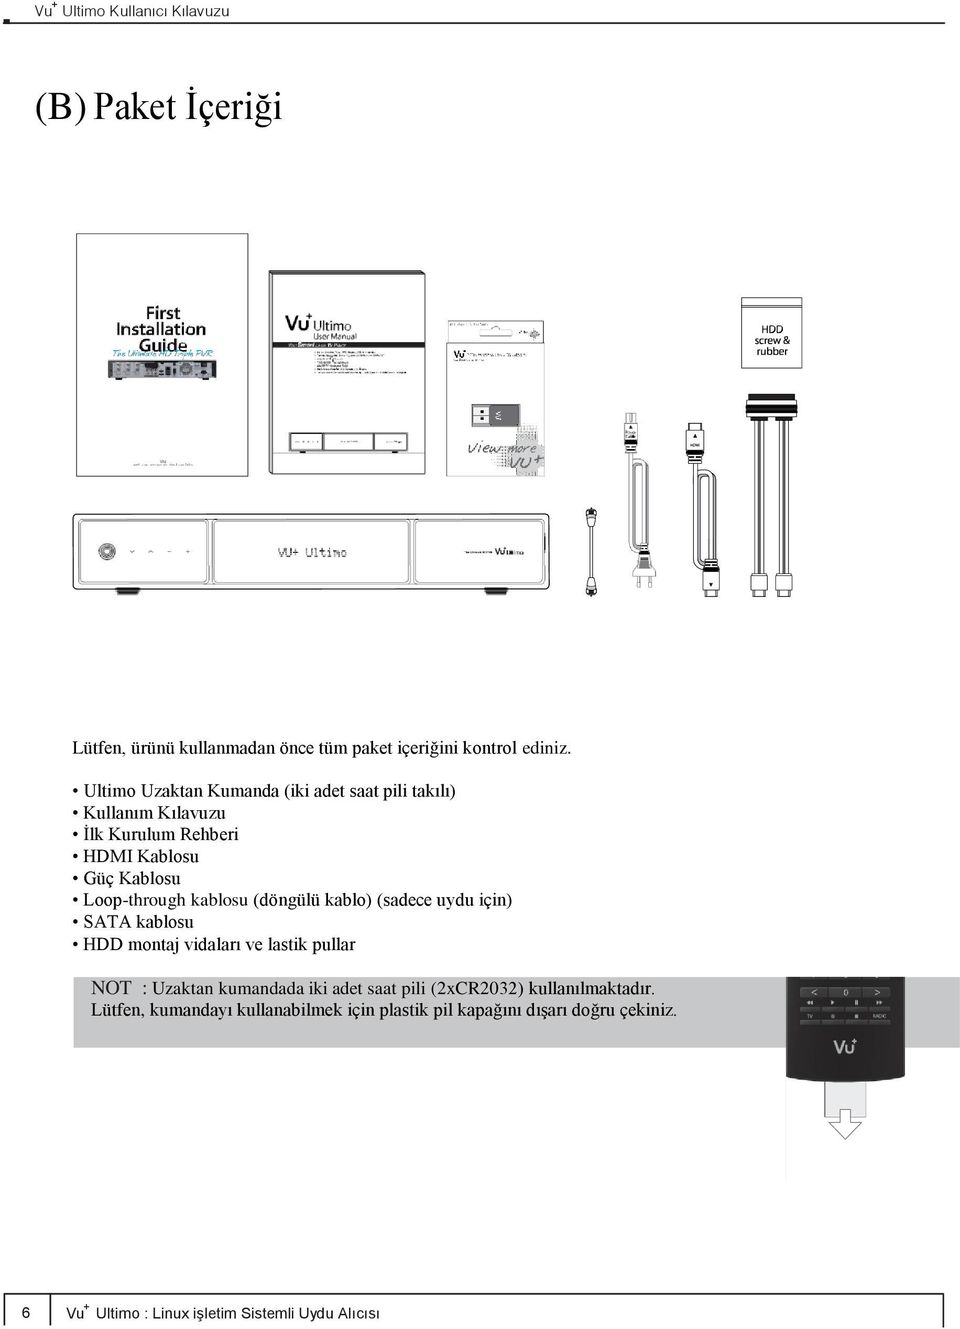 kablosu (döngülü kablo) (sadece uydu için) SATA kablosu HDD montaj vidaları ve lastik pullar NOT : Uzaktan kumandada iki adet